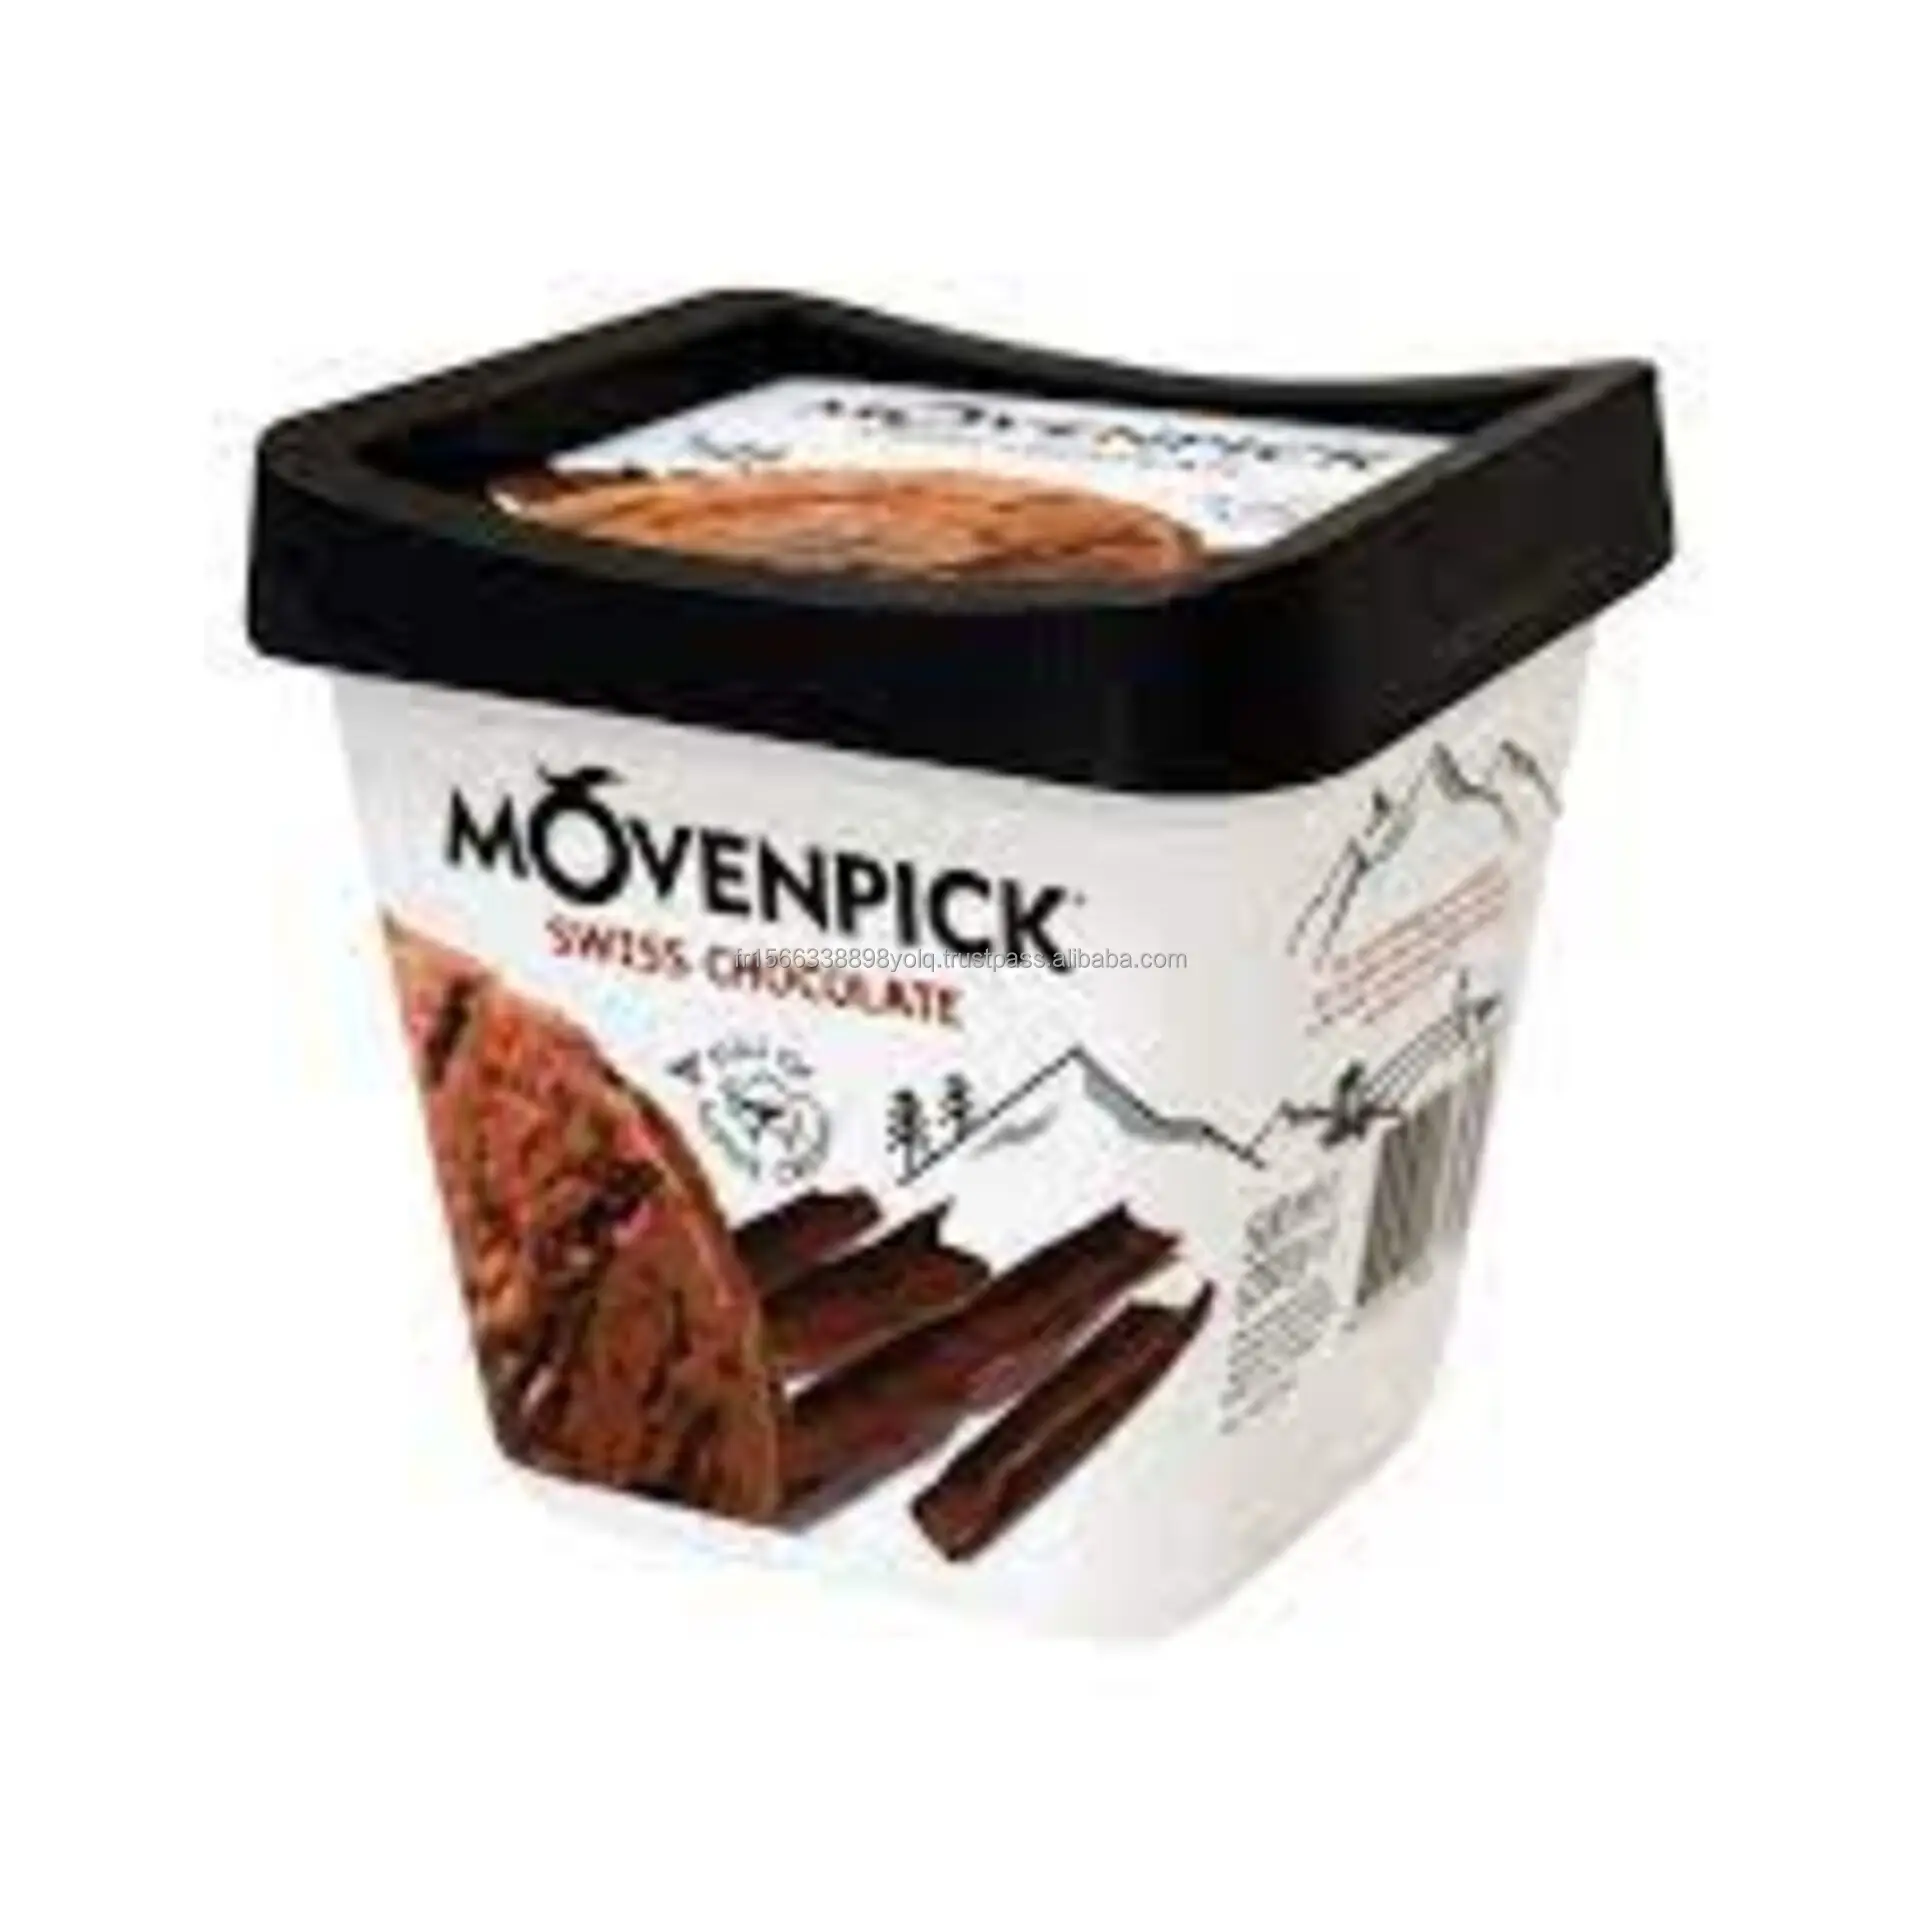 स्विस चॉकलेट आइसक्रीम 100 मिली मूवेनपिक